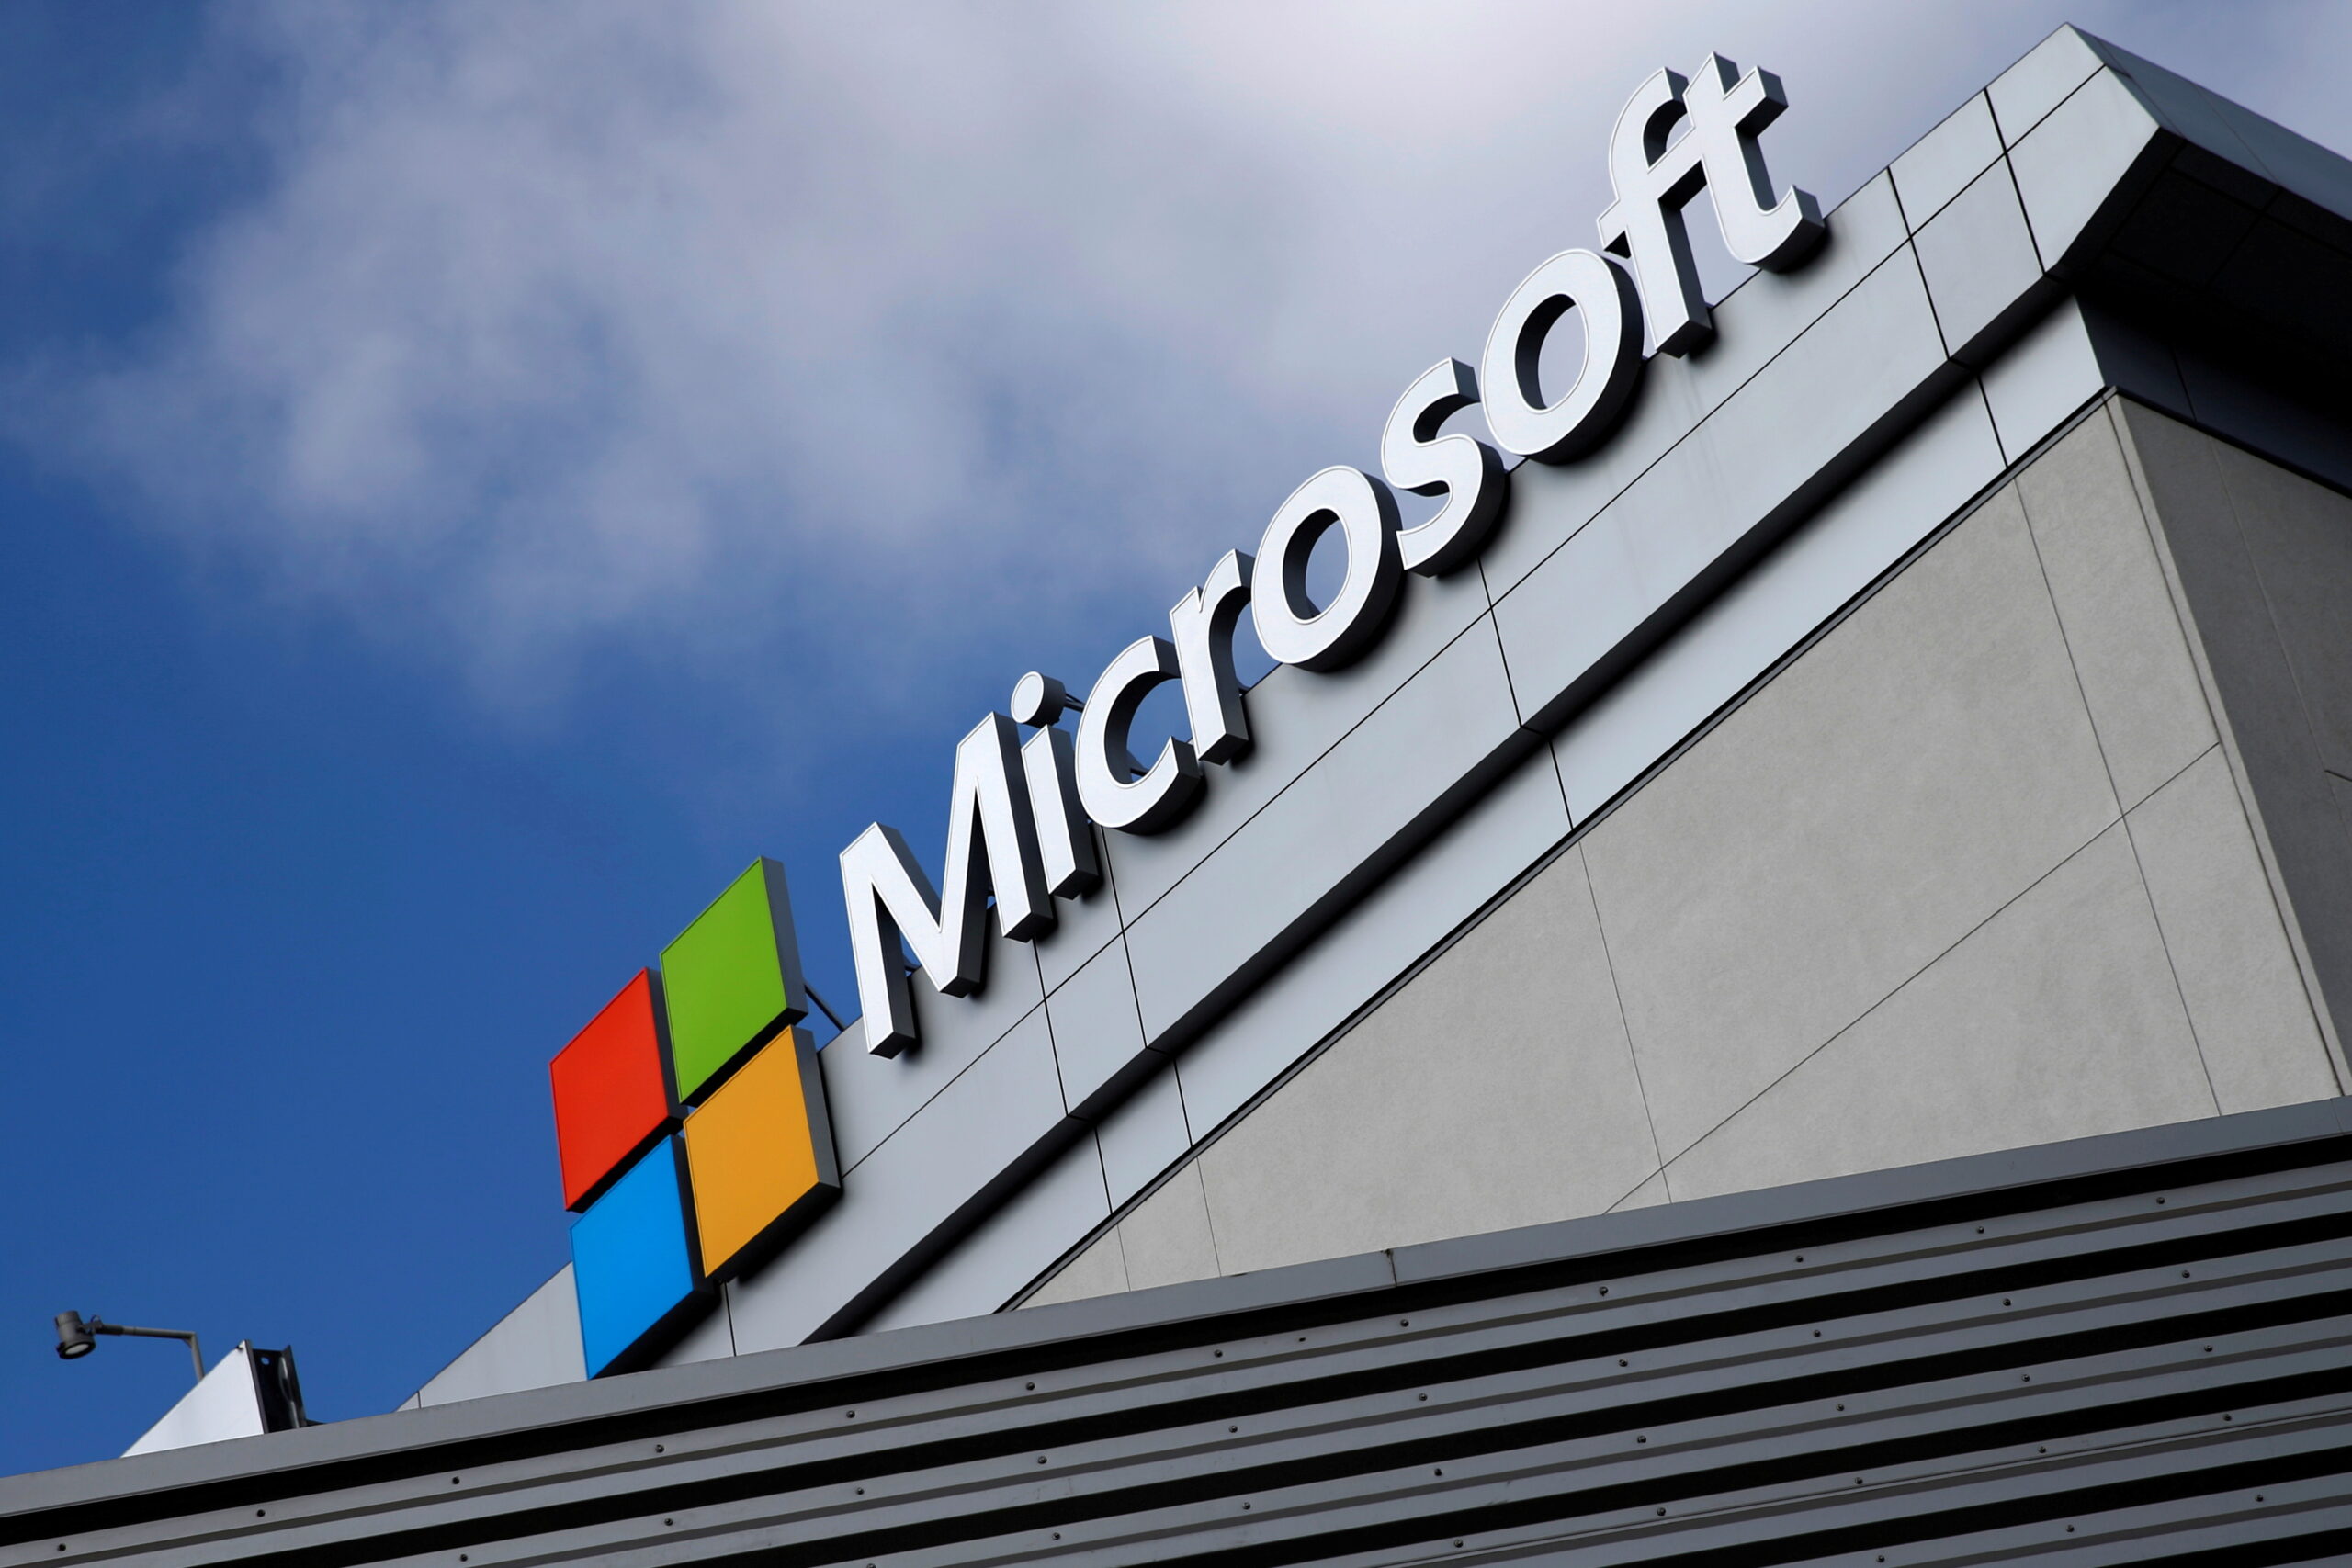 A Microsoft a metaverzum terveit szeretné megvalósítani az Activision Blizzard felvásárlásával, kiemelt kép